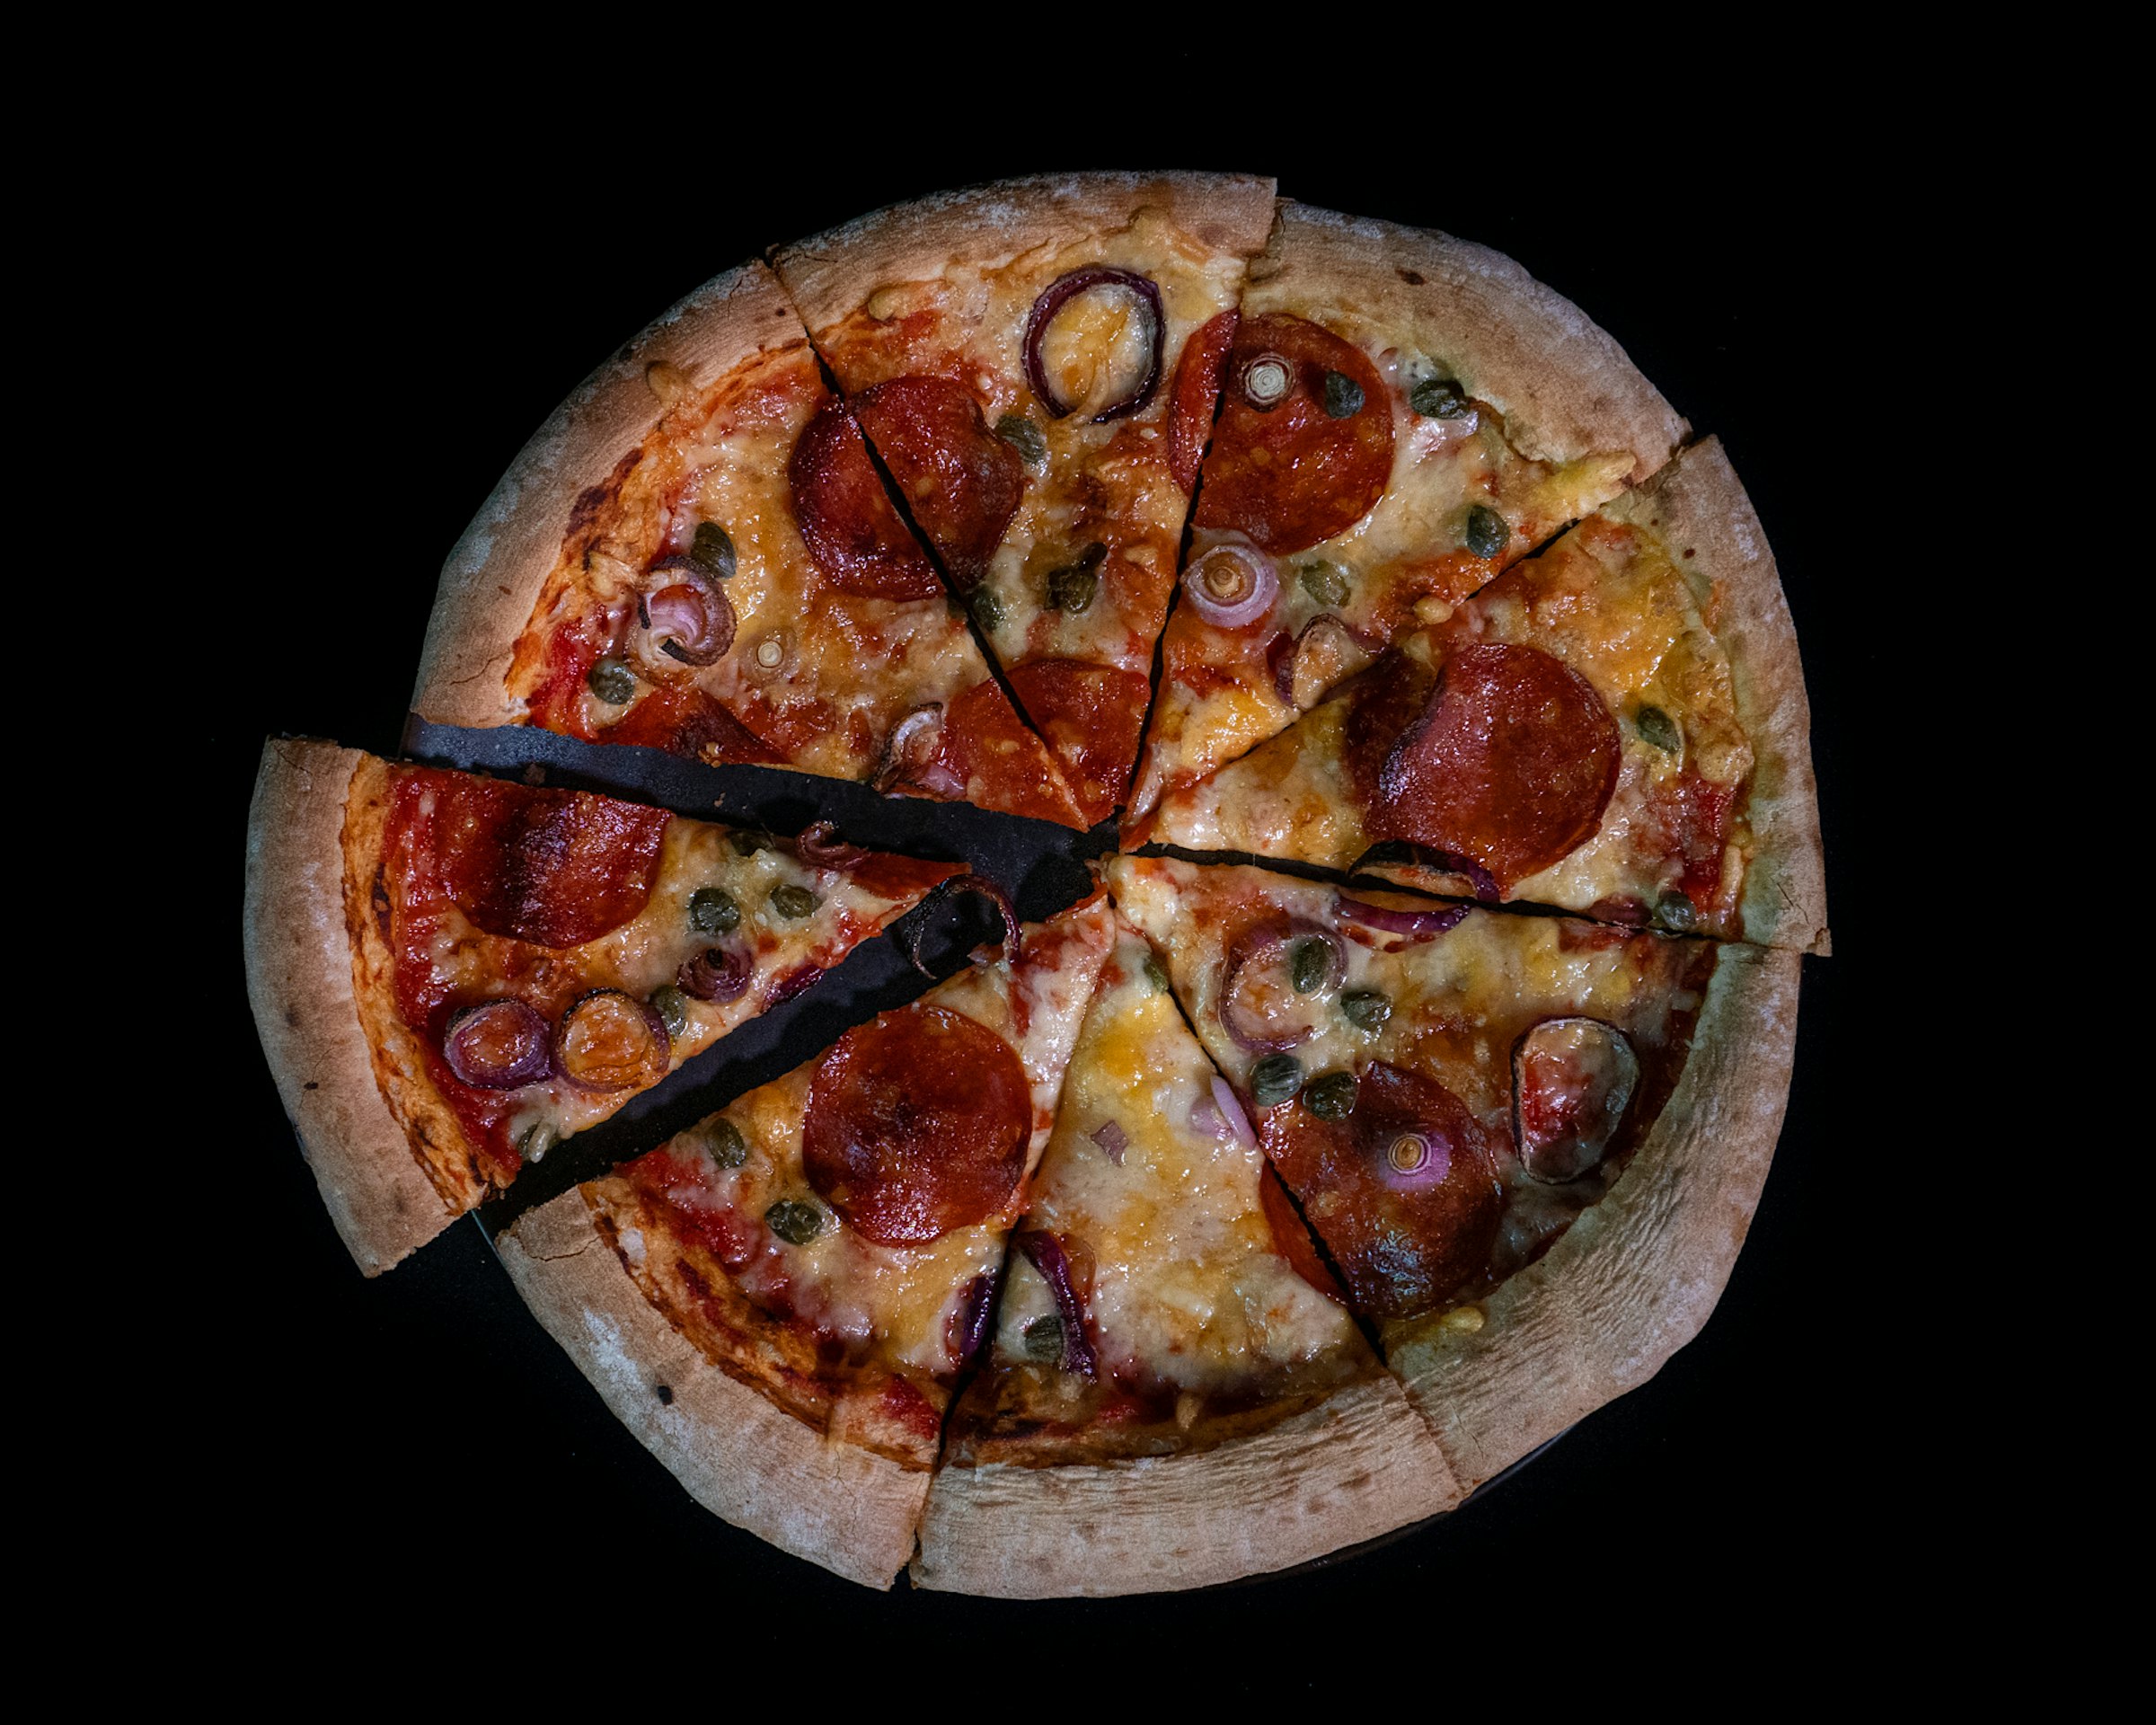 Pizza sett ovenfra på svart bakgrunn. Pizzaen har en tykk kant, ost, grønnsaker og pølsebiter på toppen, Den er delt i åtte trekanter hvor den til venstre er tatt litt ut fra ringen.